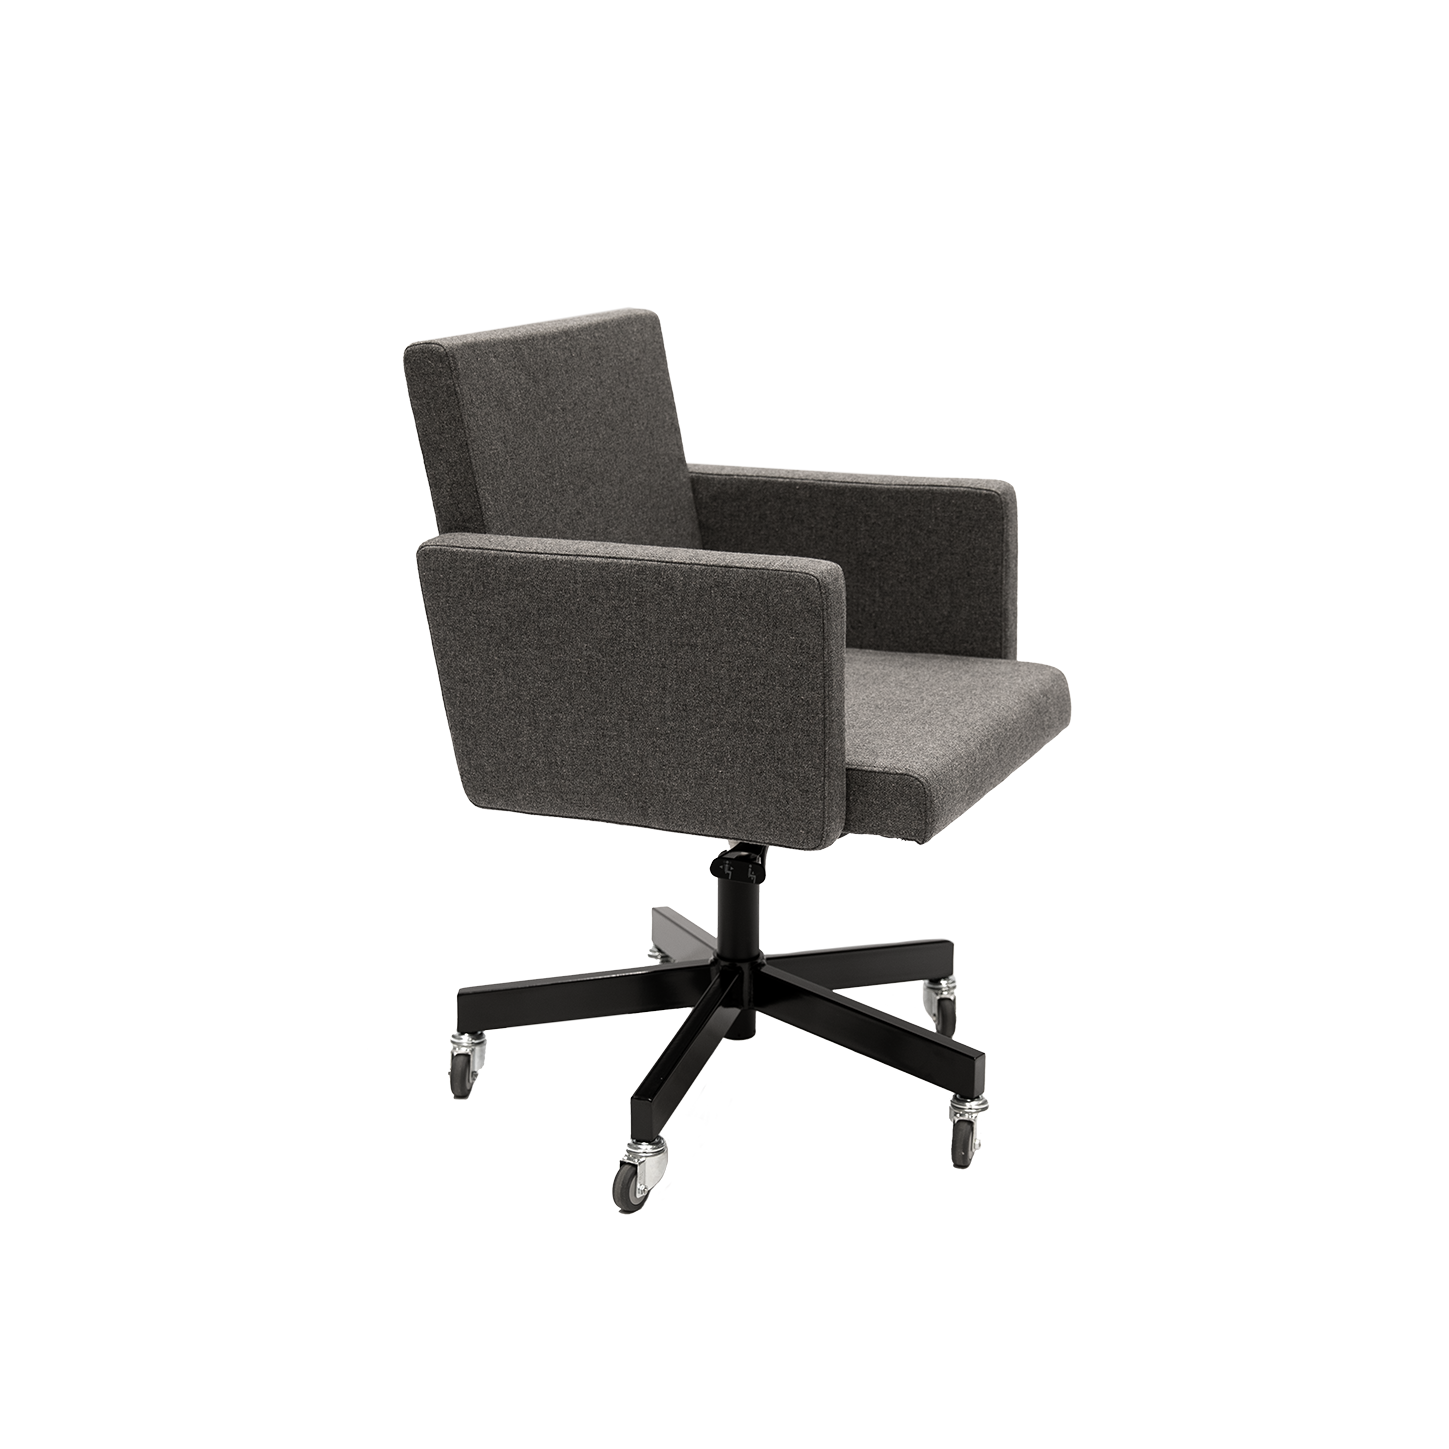 AVL Chair